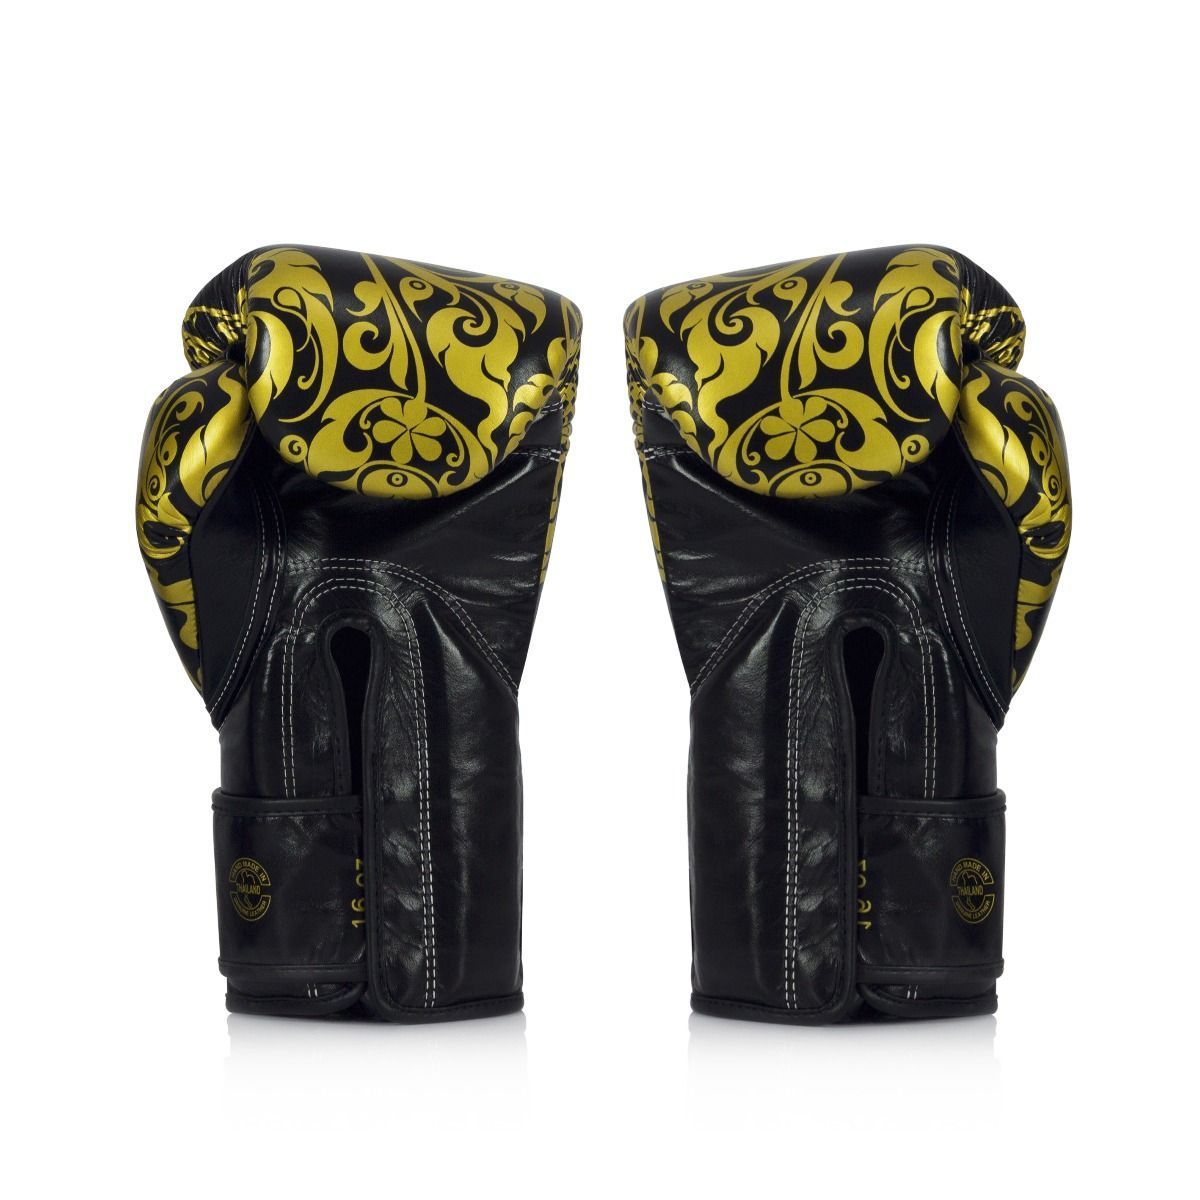 FAIRTEX BGVG2 X Glory Limited Edition Gloves – Velcro [Black]